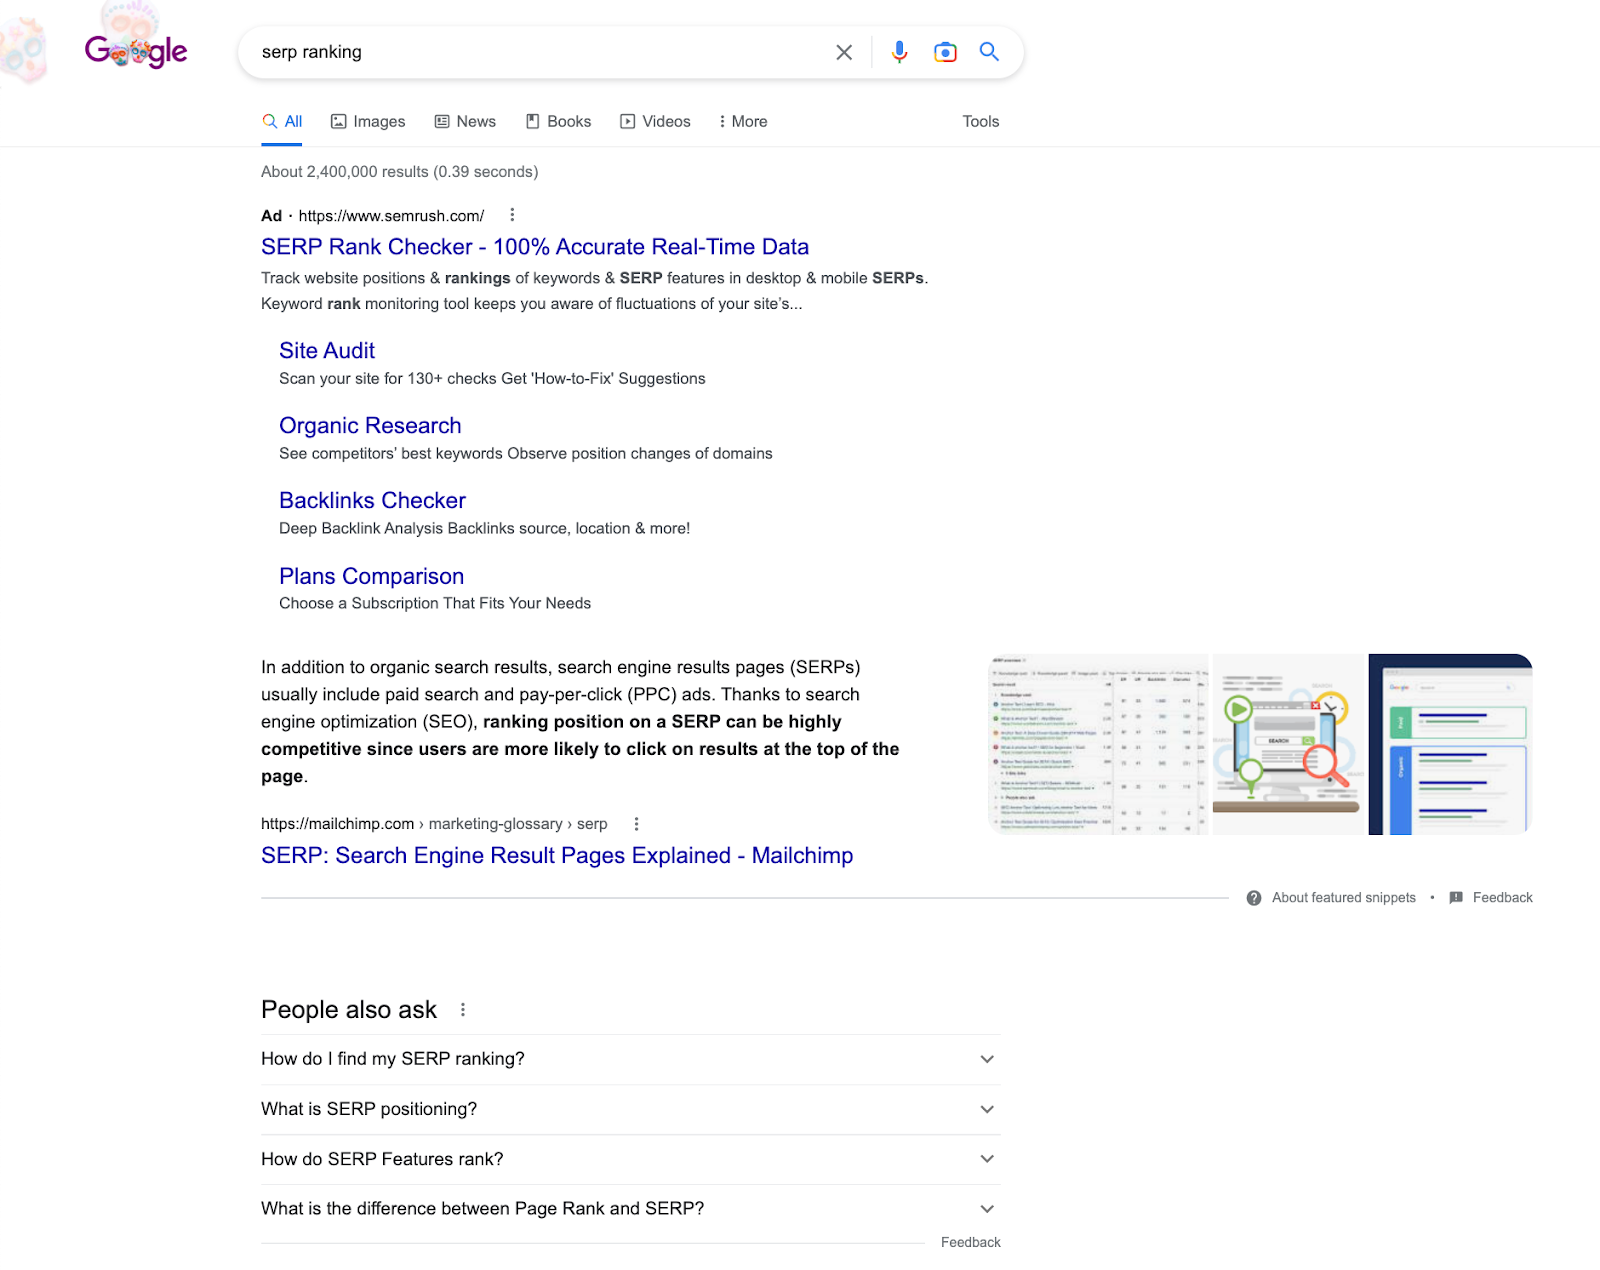 Capture d'écran de la requête de recherche "Classement SERP" sur Google. Il comprend les résultats de la recherche, un extrait en vedette et la section "Les gens demandent aussi", qui sont d'autres questions fréquemment posées.